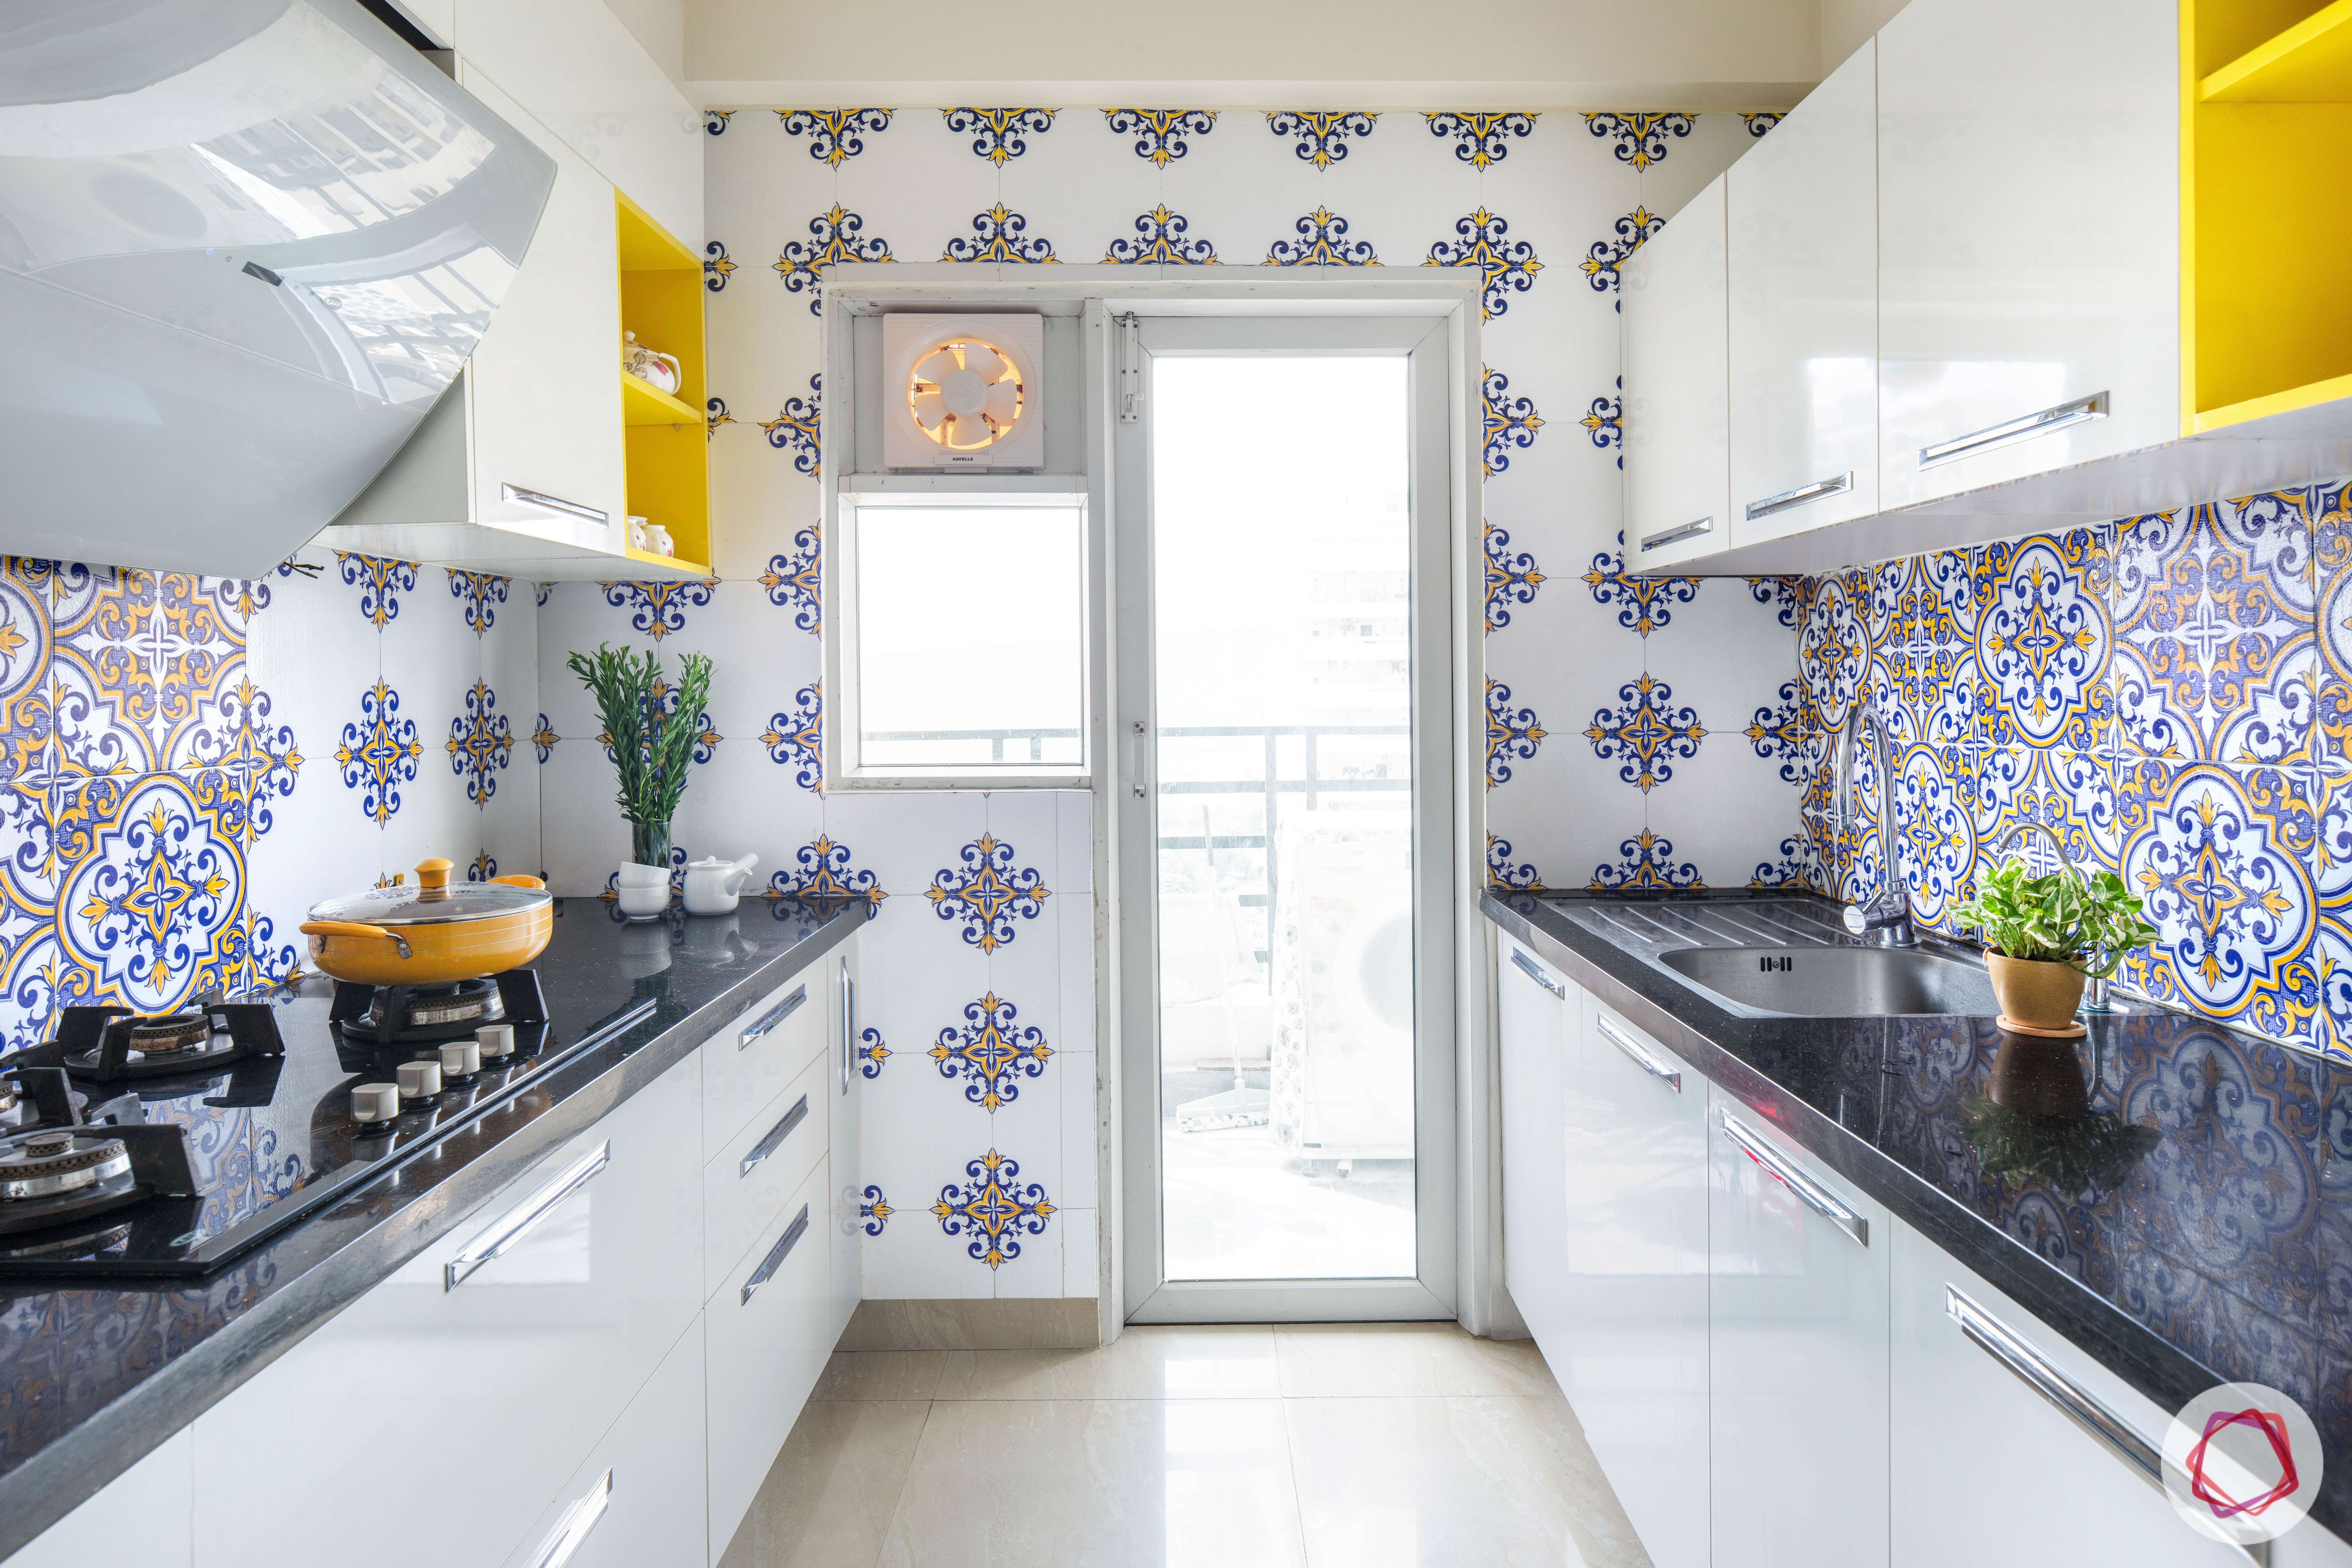 wall-tiles-design-floral-ceramic-backsplash-white-cabinets-lofts
